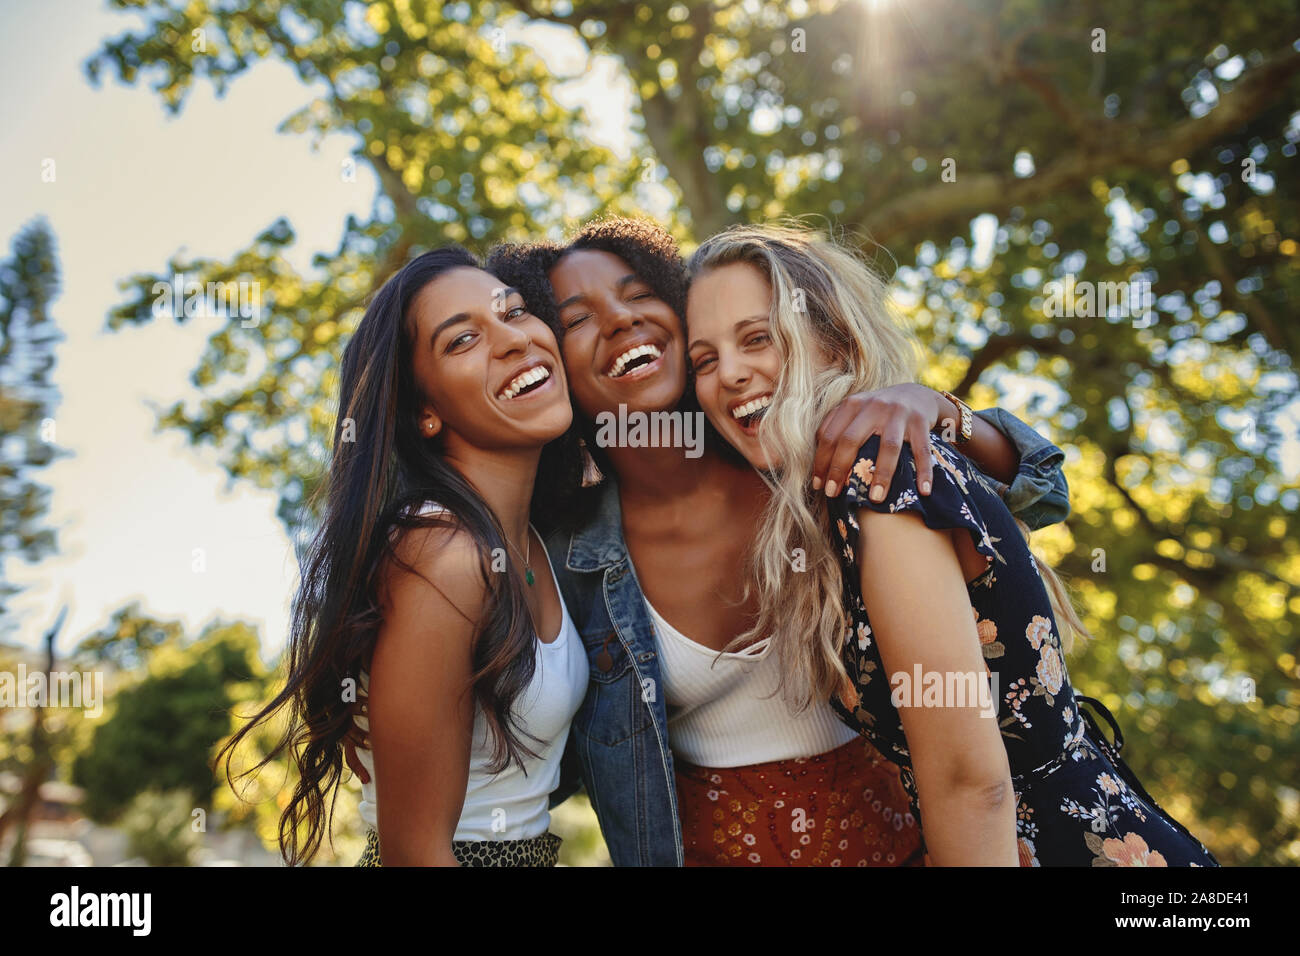 Portrait Of Happy multiethnische Gruppe von lächelnd weibliche Freunde - Frauen lachen und Spaß im Park an einem sonnigen Tag Stockfoto